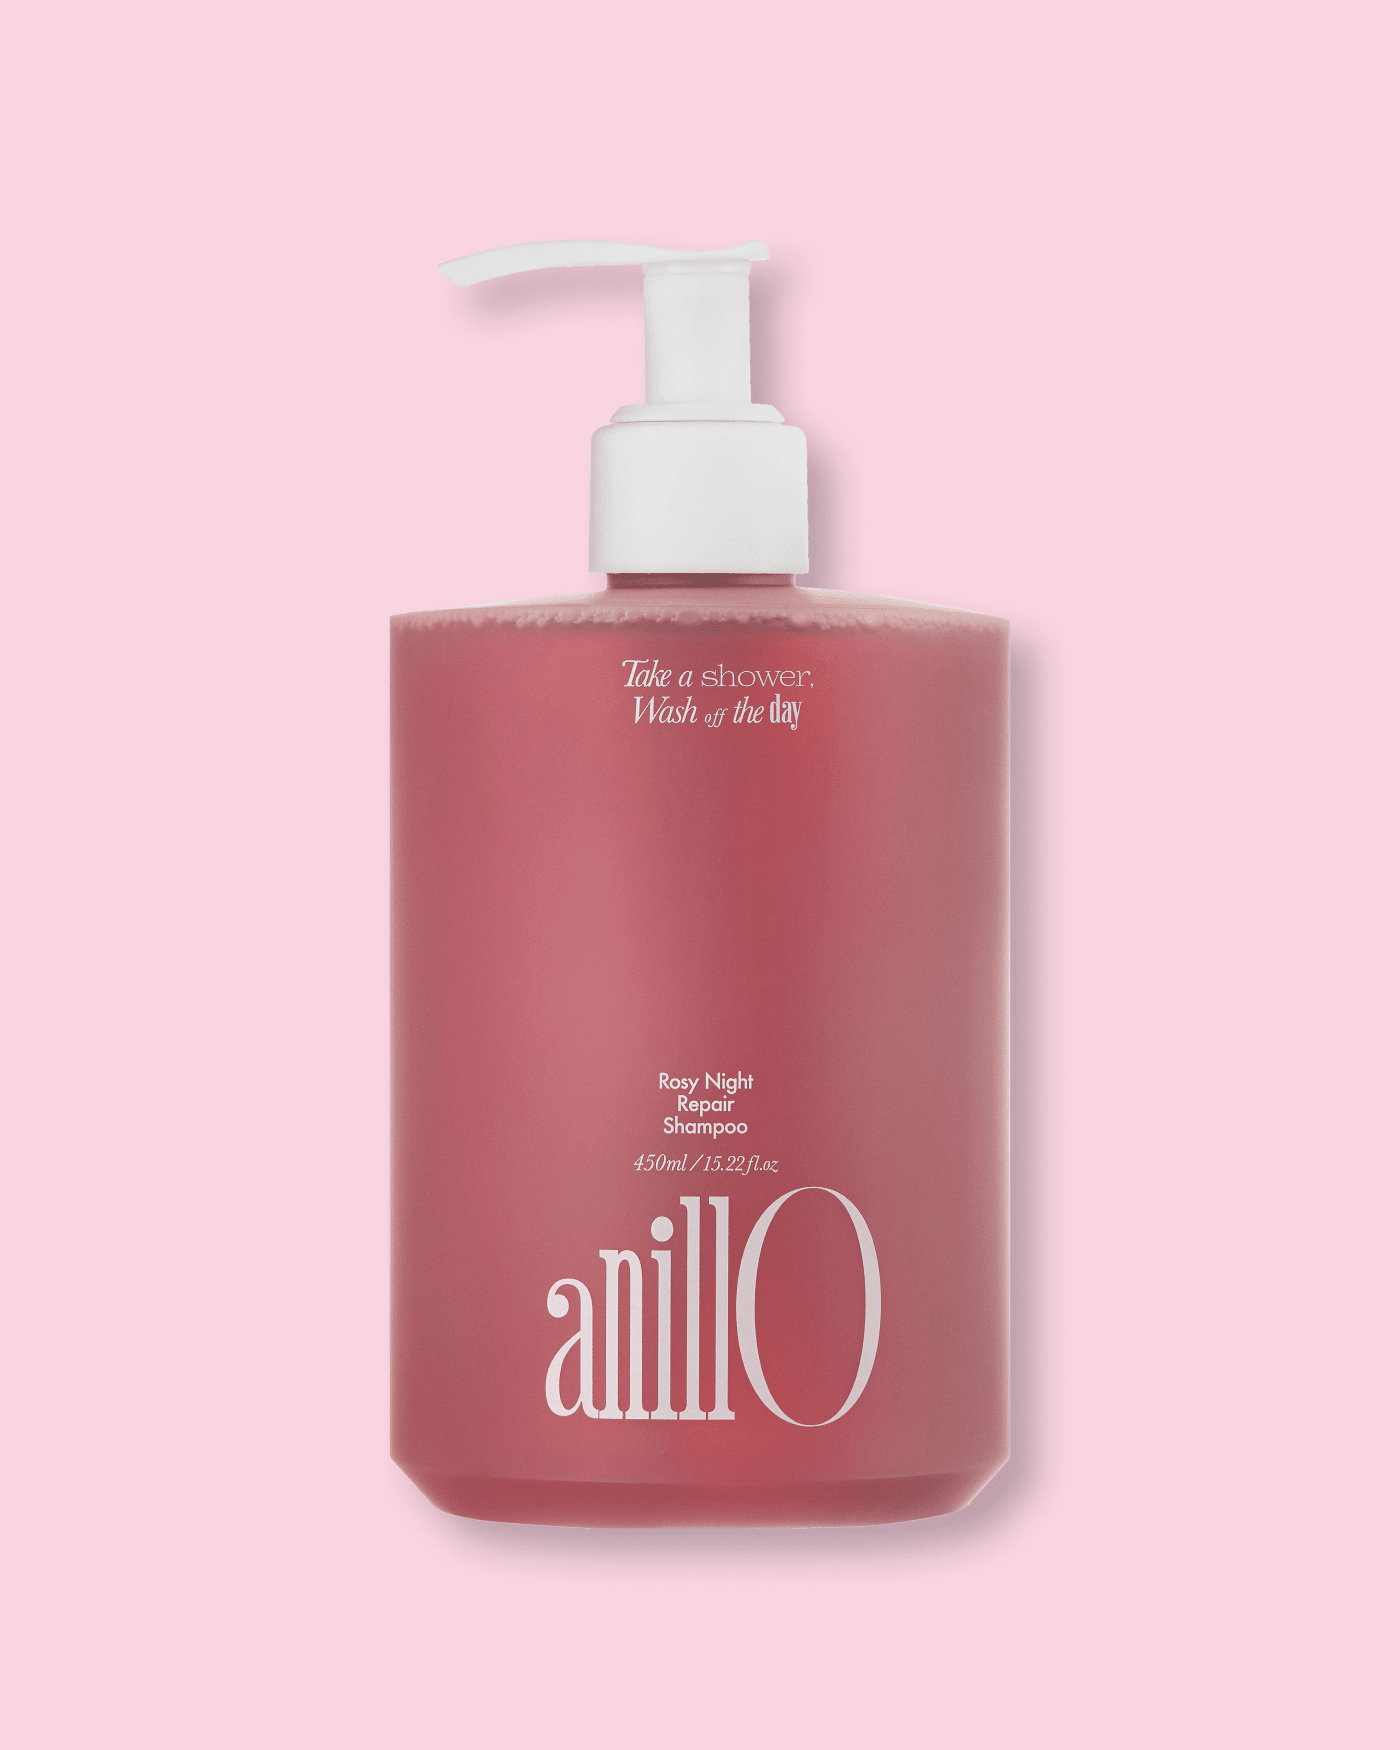 Rosy Night Repair Shampoo Anillo 